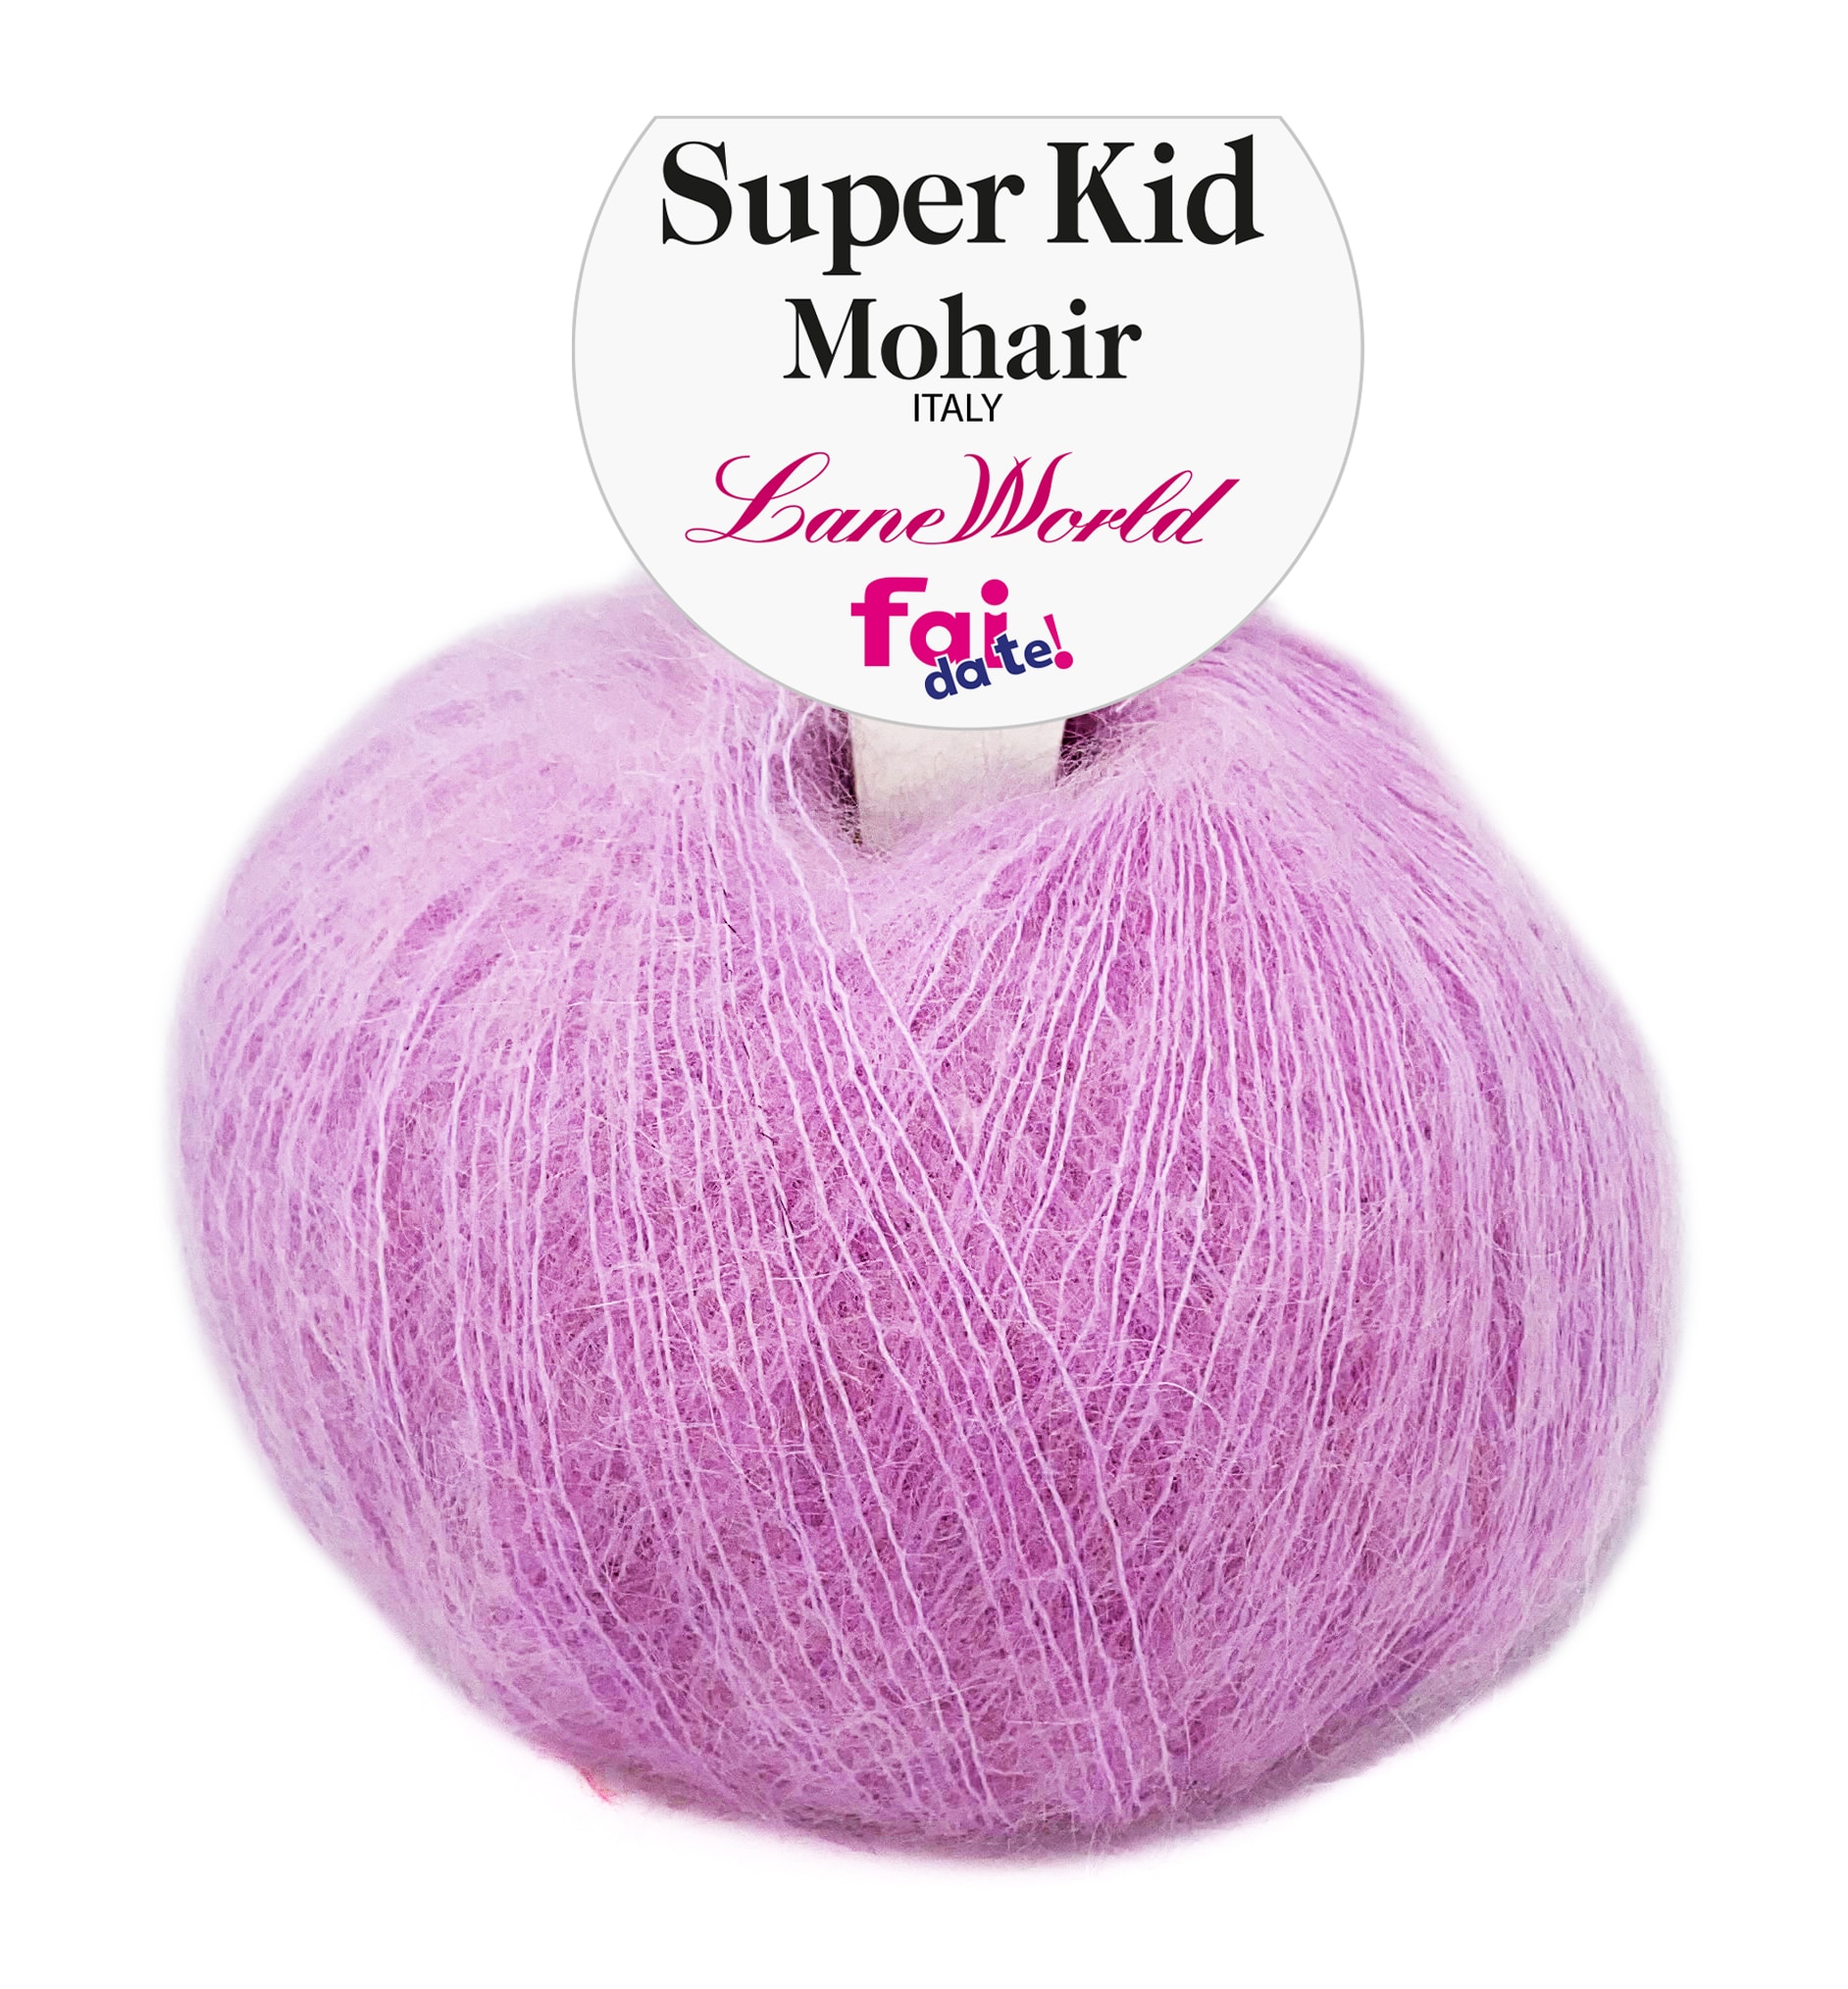 Super Kid Mohair - gomitolo 40 grammi